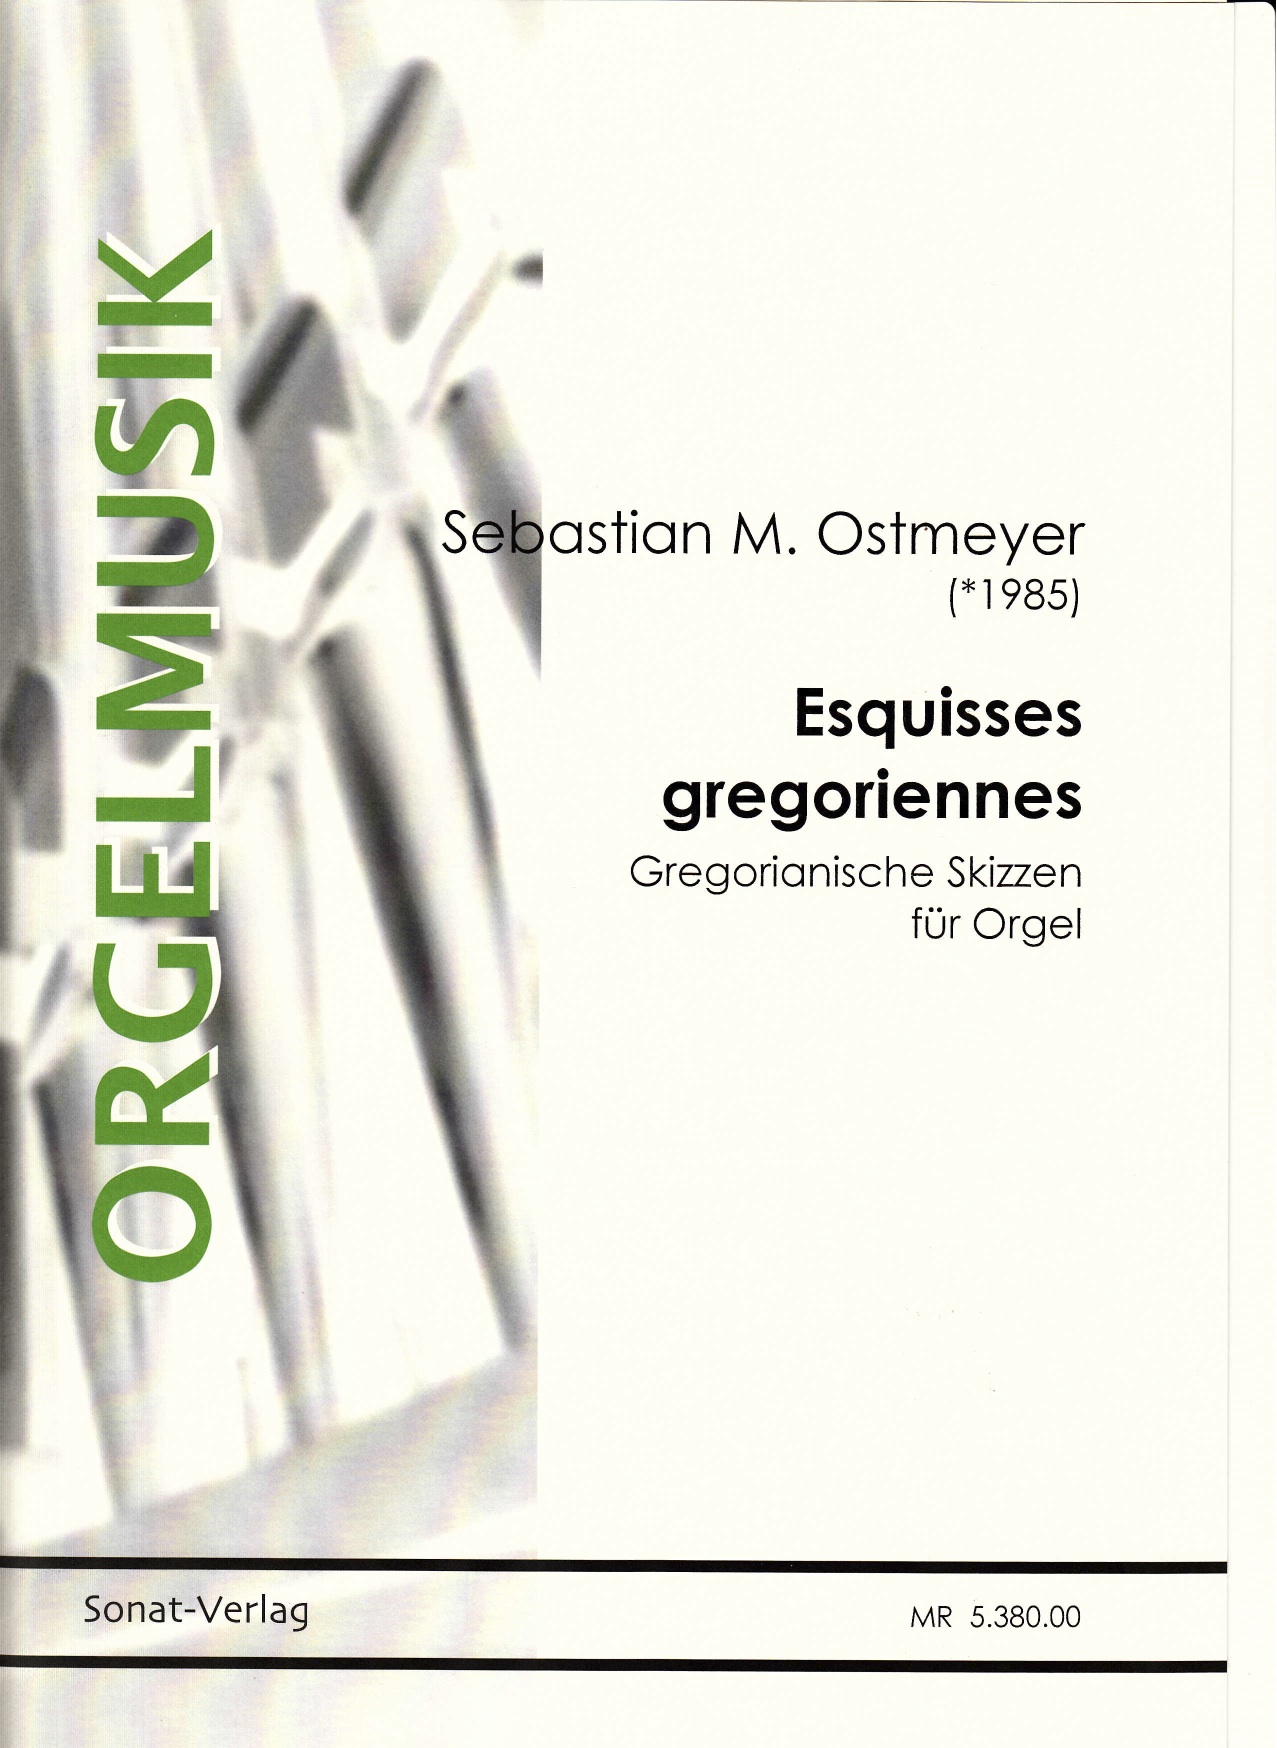 Ostmeyer, Sebastian M. (*1985): Esquisses gregoriennes - Gregorianische Skizzen